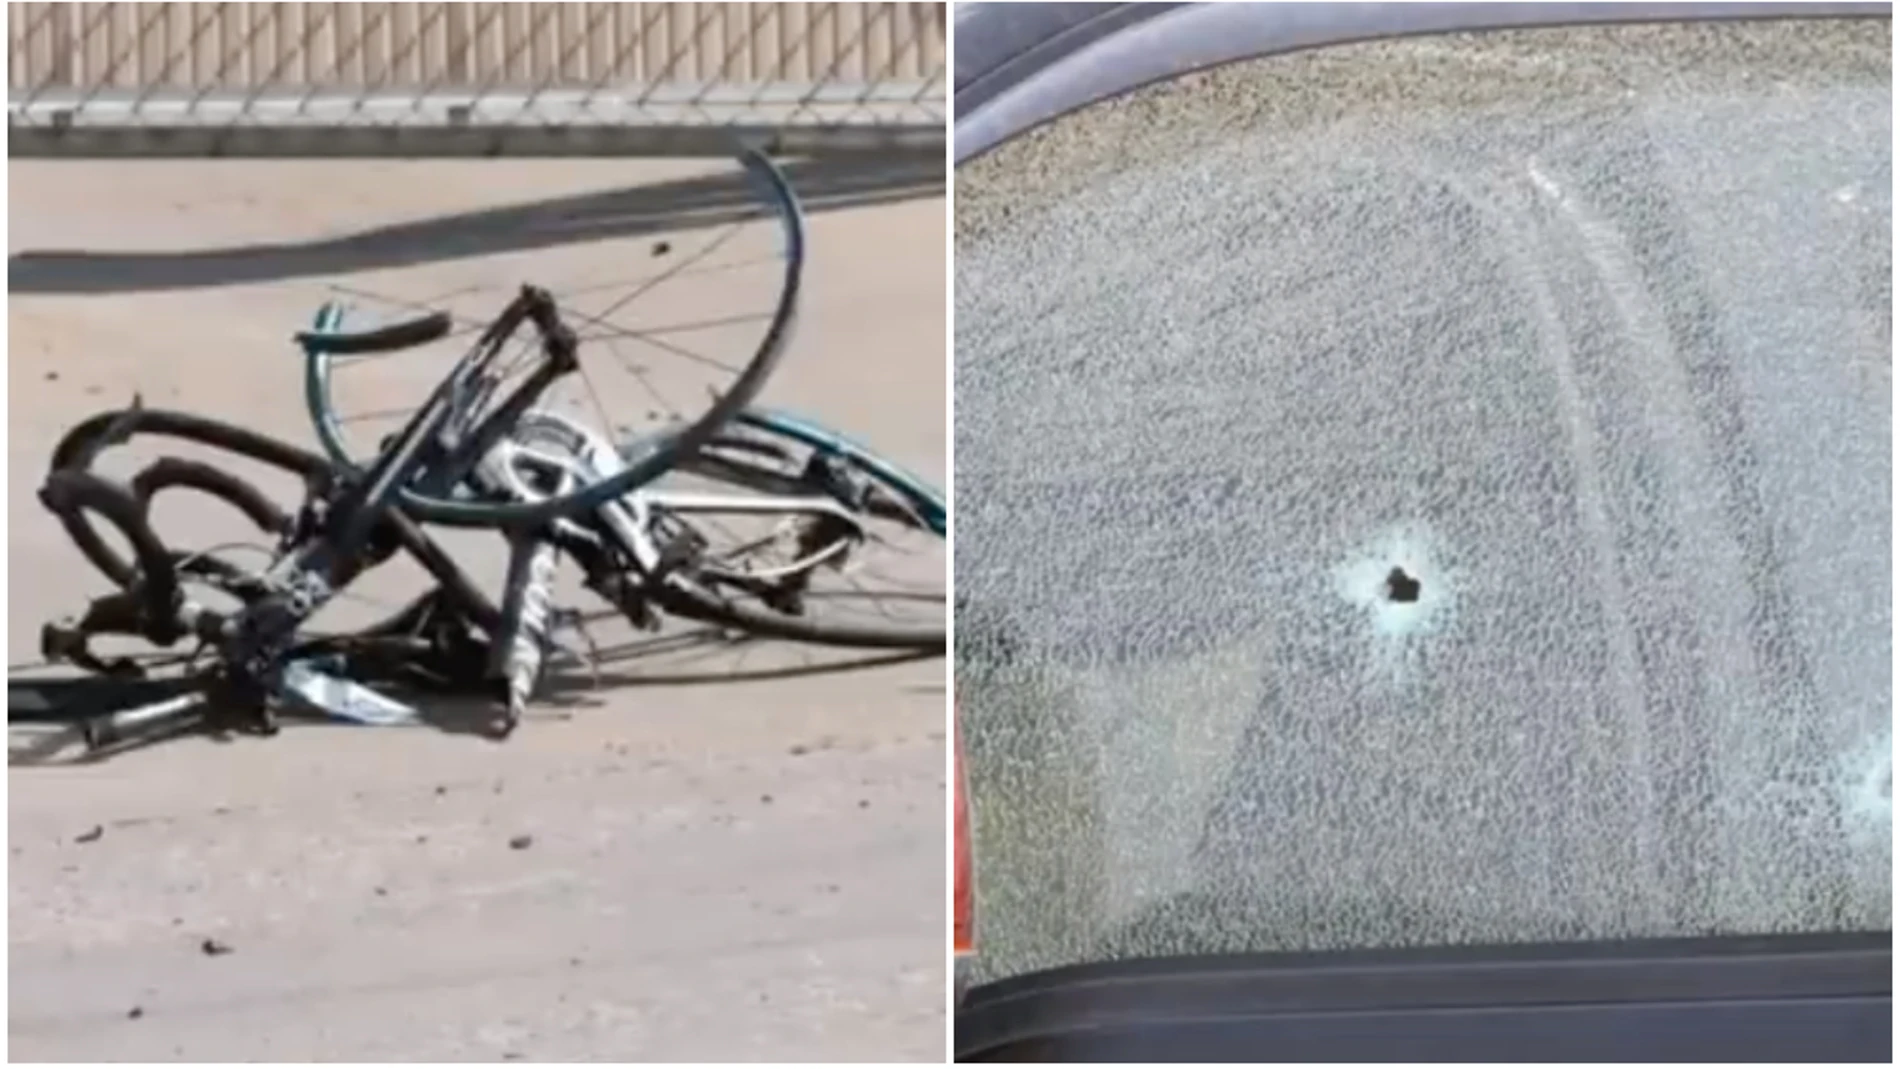 Estado de las bicicletas tras el accidente /disparo en el vehículo del conductor 